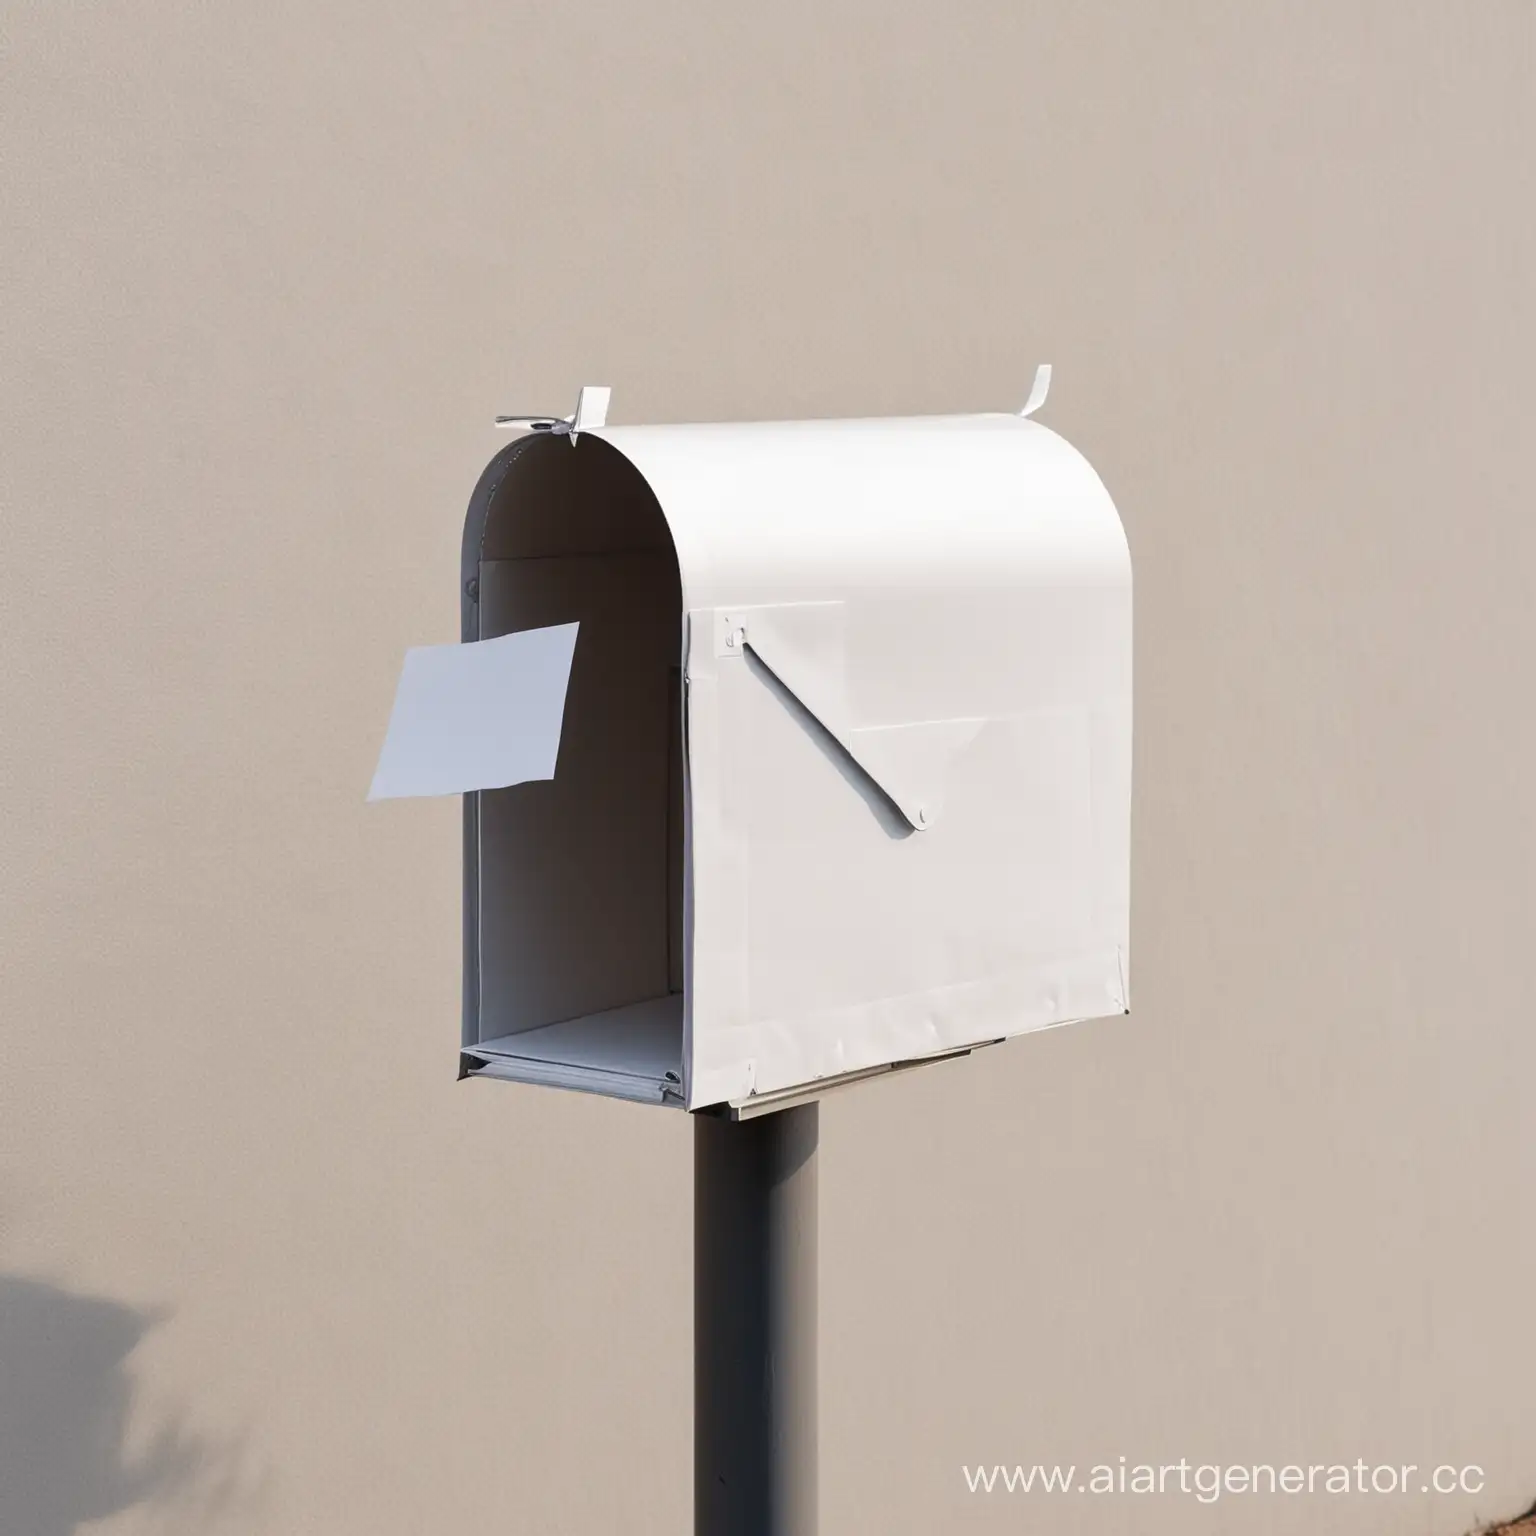 письмо или белый лист без каких либо других элементов, торчащее из почтового ящика без рук человека